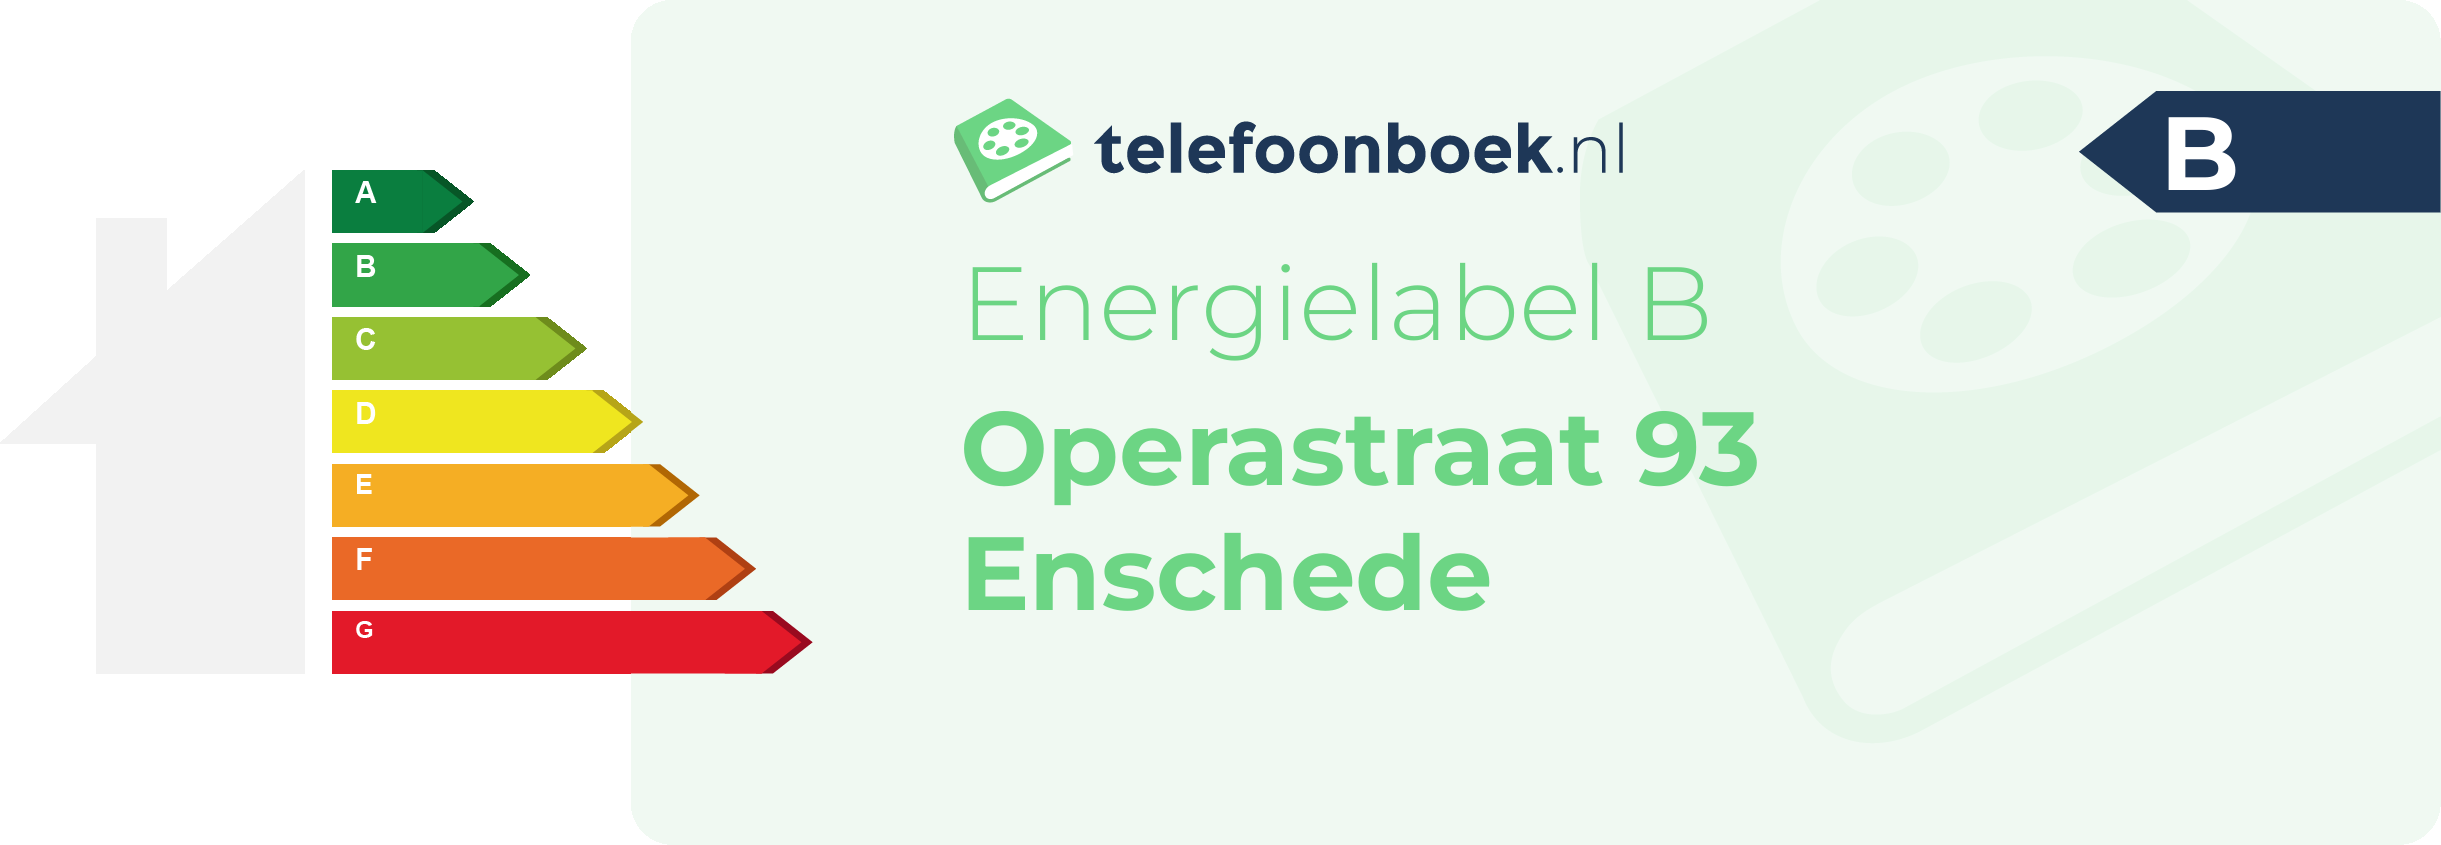 Energielabel Operastraat 93 Enschede